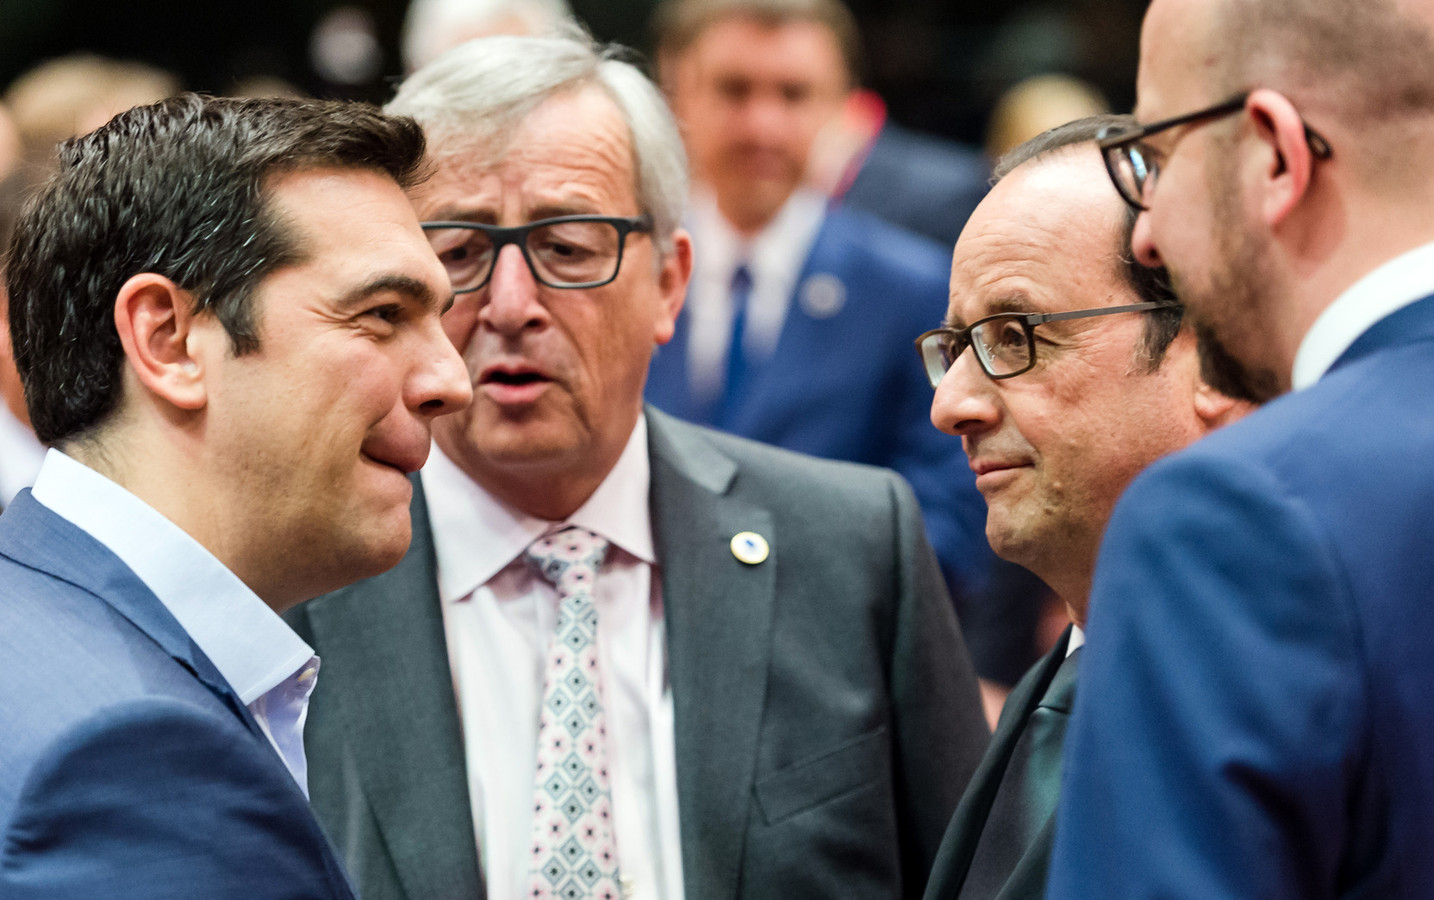 De Griekse premier Alexis Tsipras (l) in gesprek met president Jean-Claude Juncker van de Europese Commissie, de Franse premier Francois Hollande en zijn Belgische collega Charles Michel.